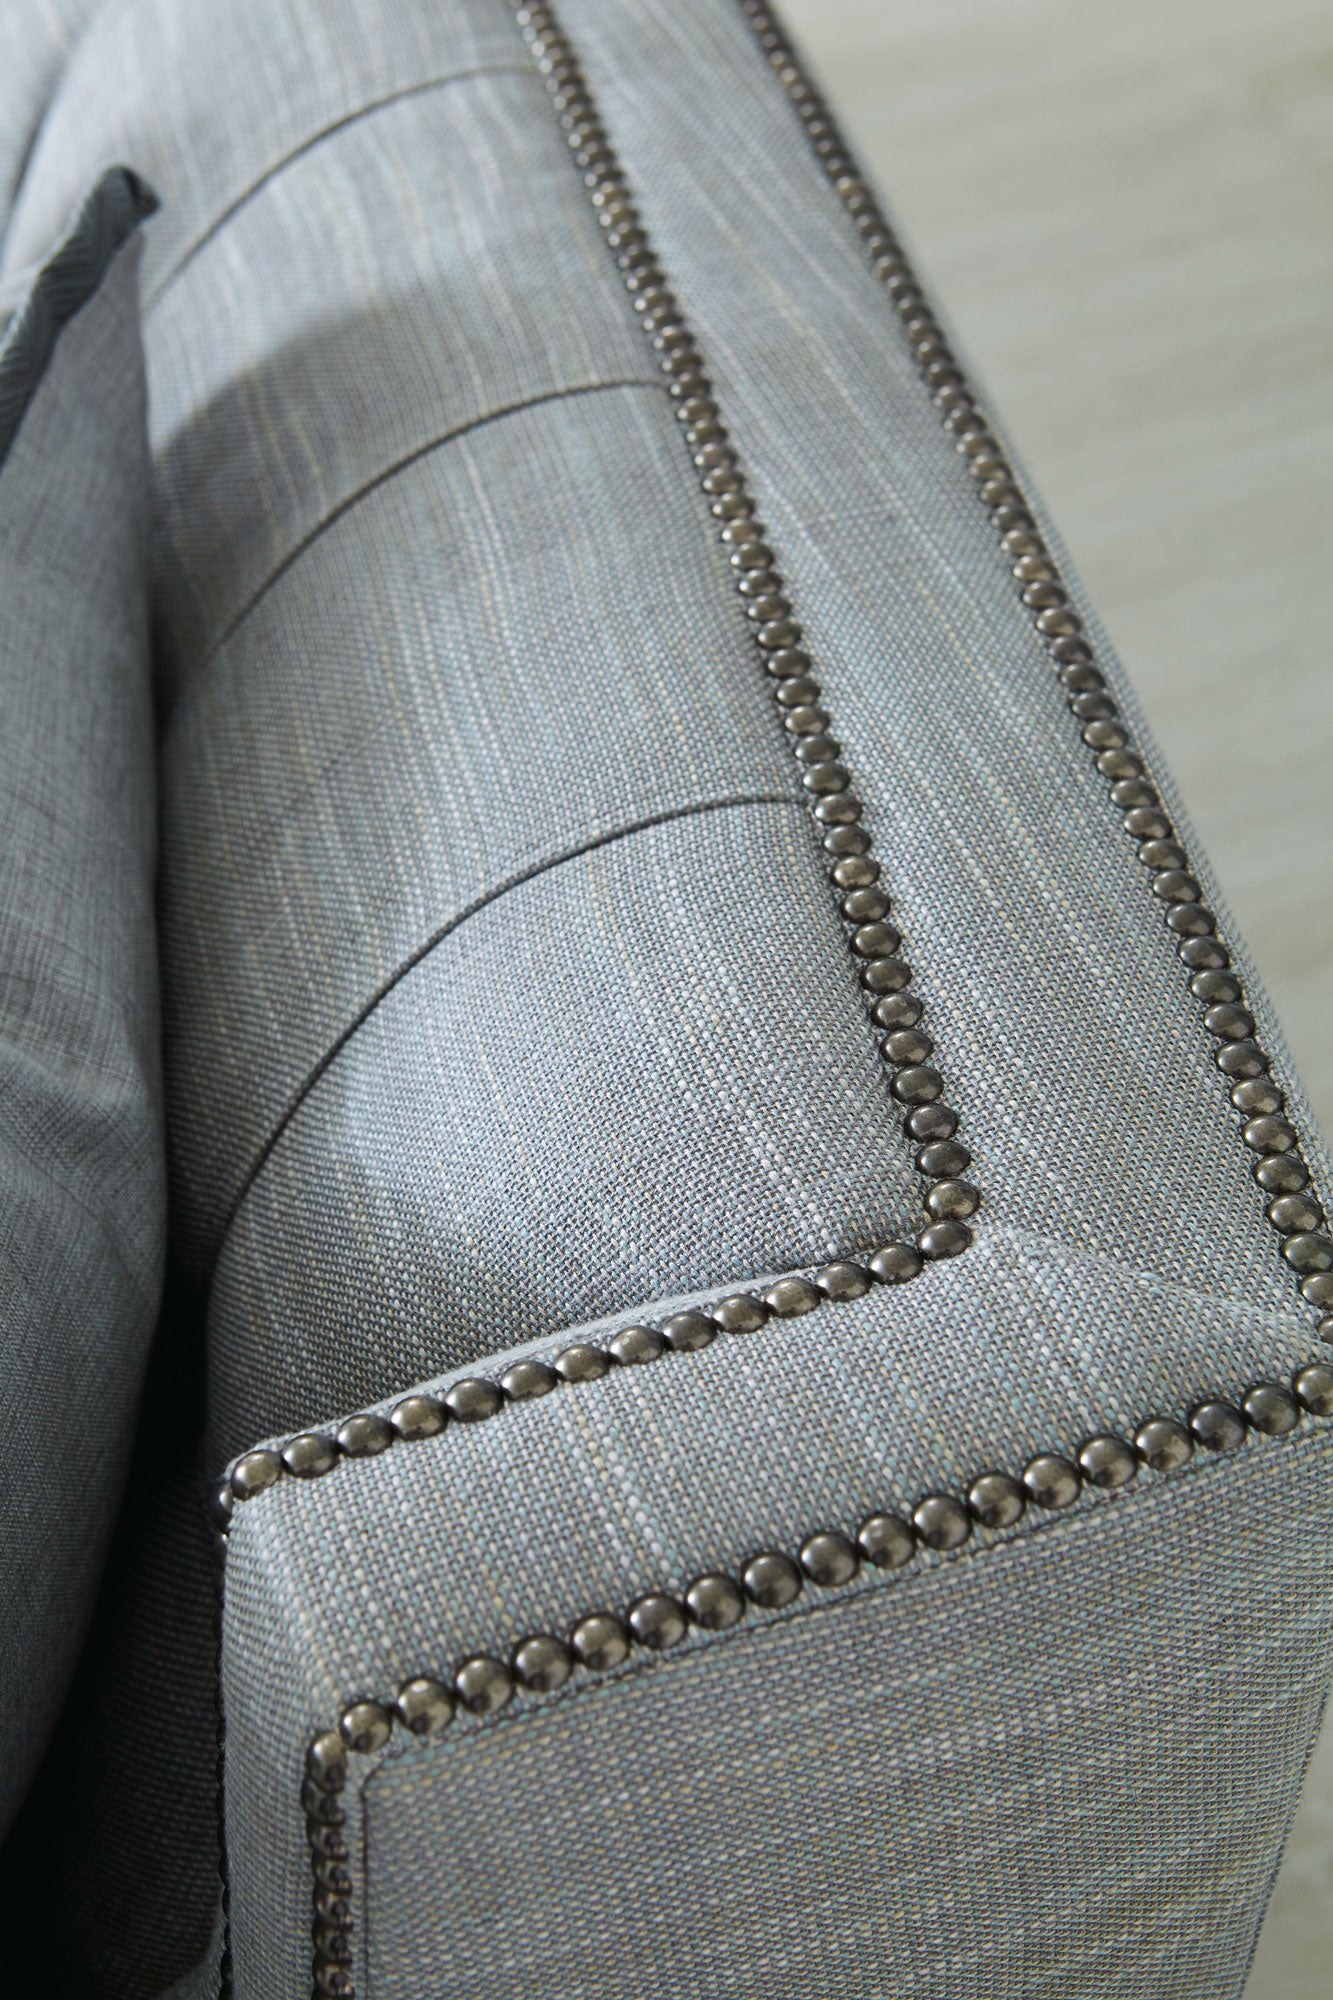 Candace Fabric Sofa